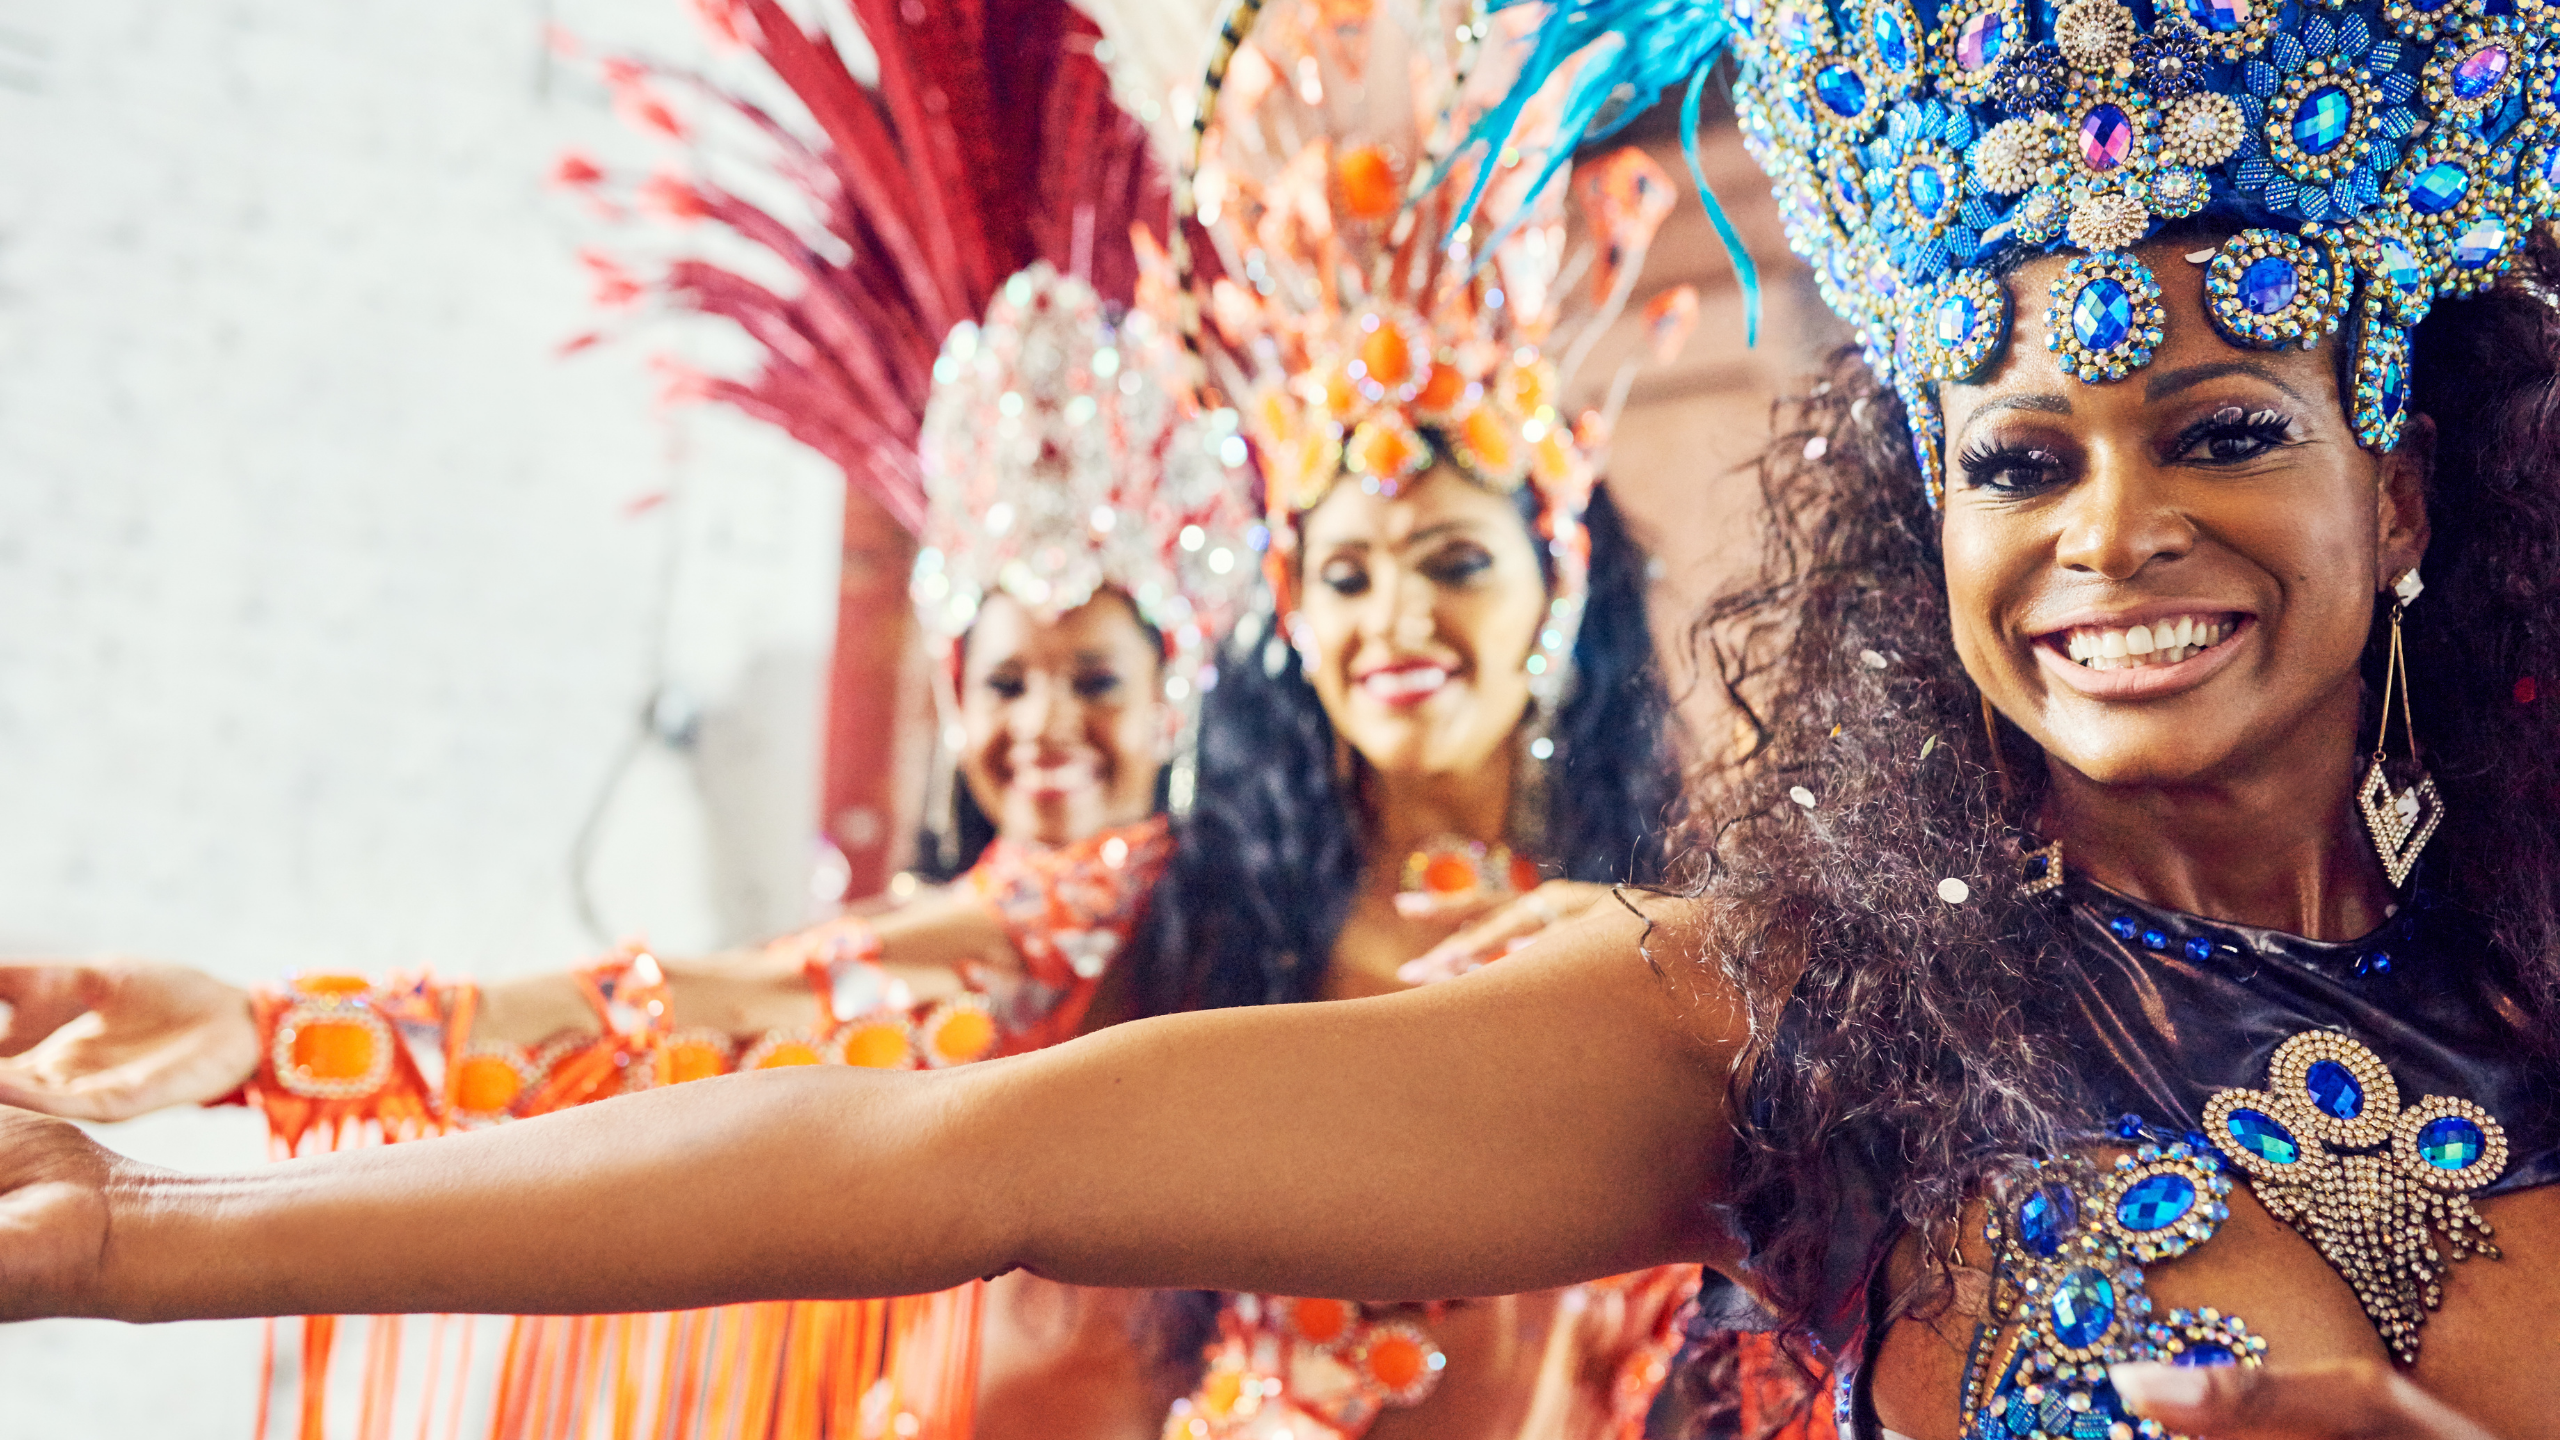 Le carnaval de Rio célèbre ses racines africaines